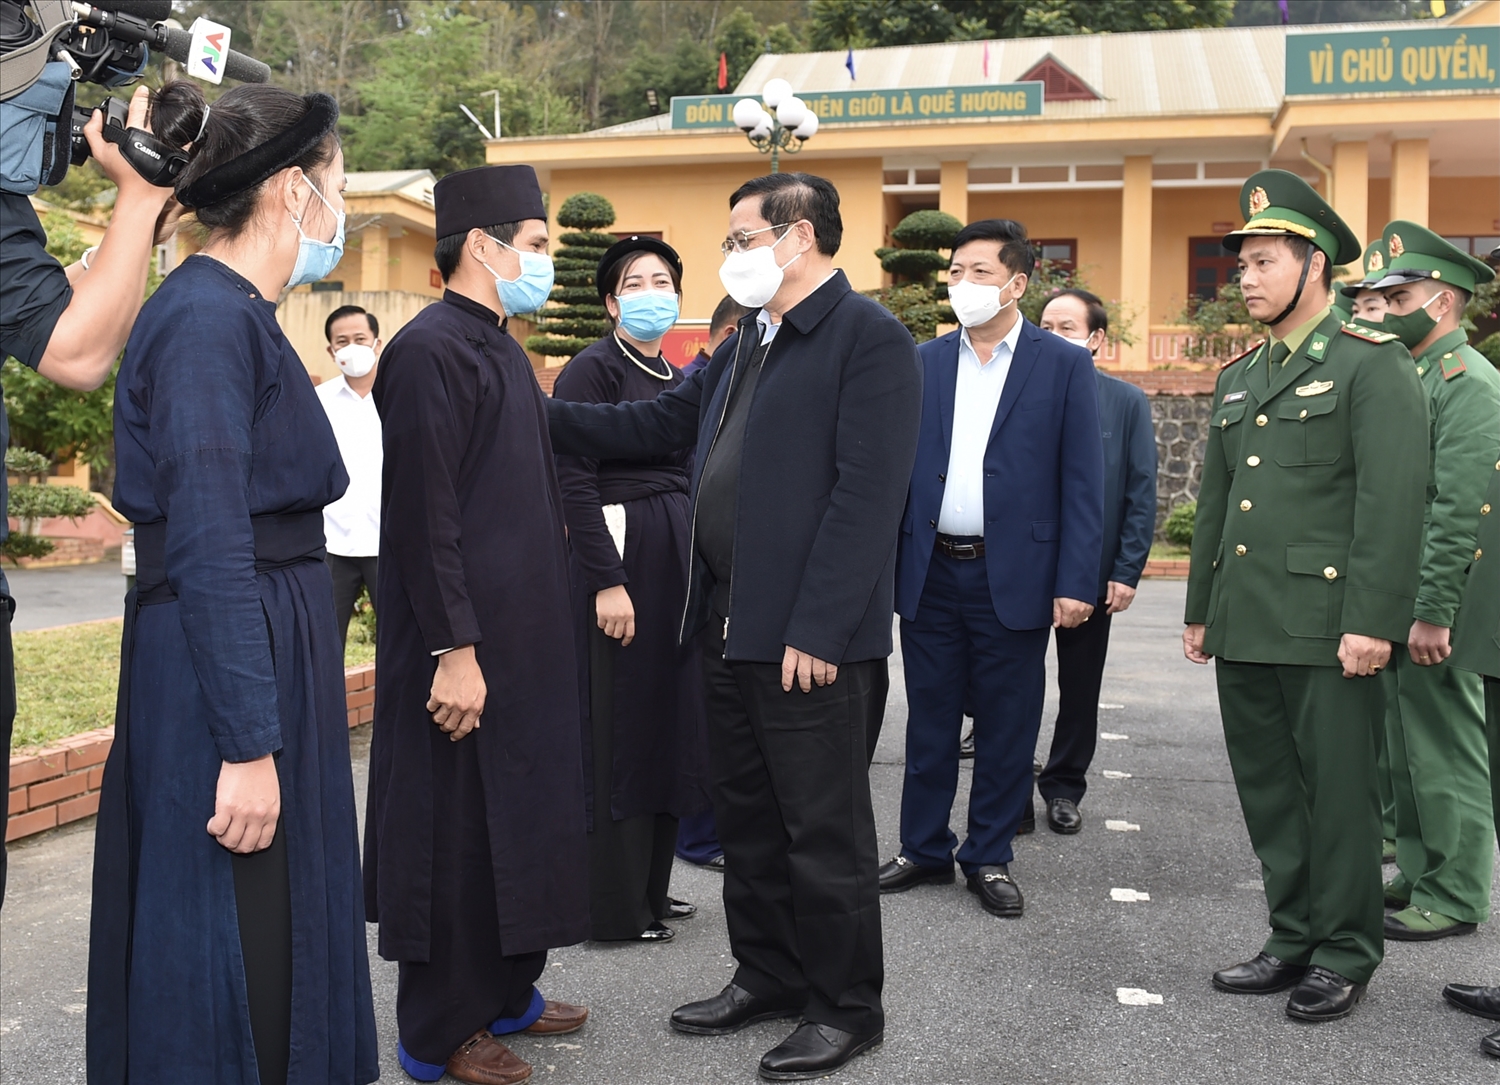 Thủ tướng bày tỏ vui mừng được đến thăm, nói chuyện với lãnh đạo, cán bộ, chiến sĩ biên phòng, công an và nhân dân các dân tộc huyện Trùng Khánh. Ảnh VGP/Nhật Bắc